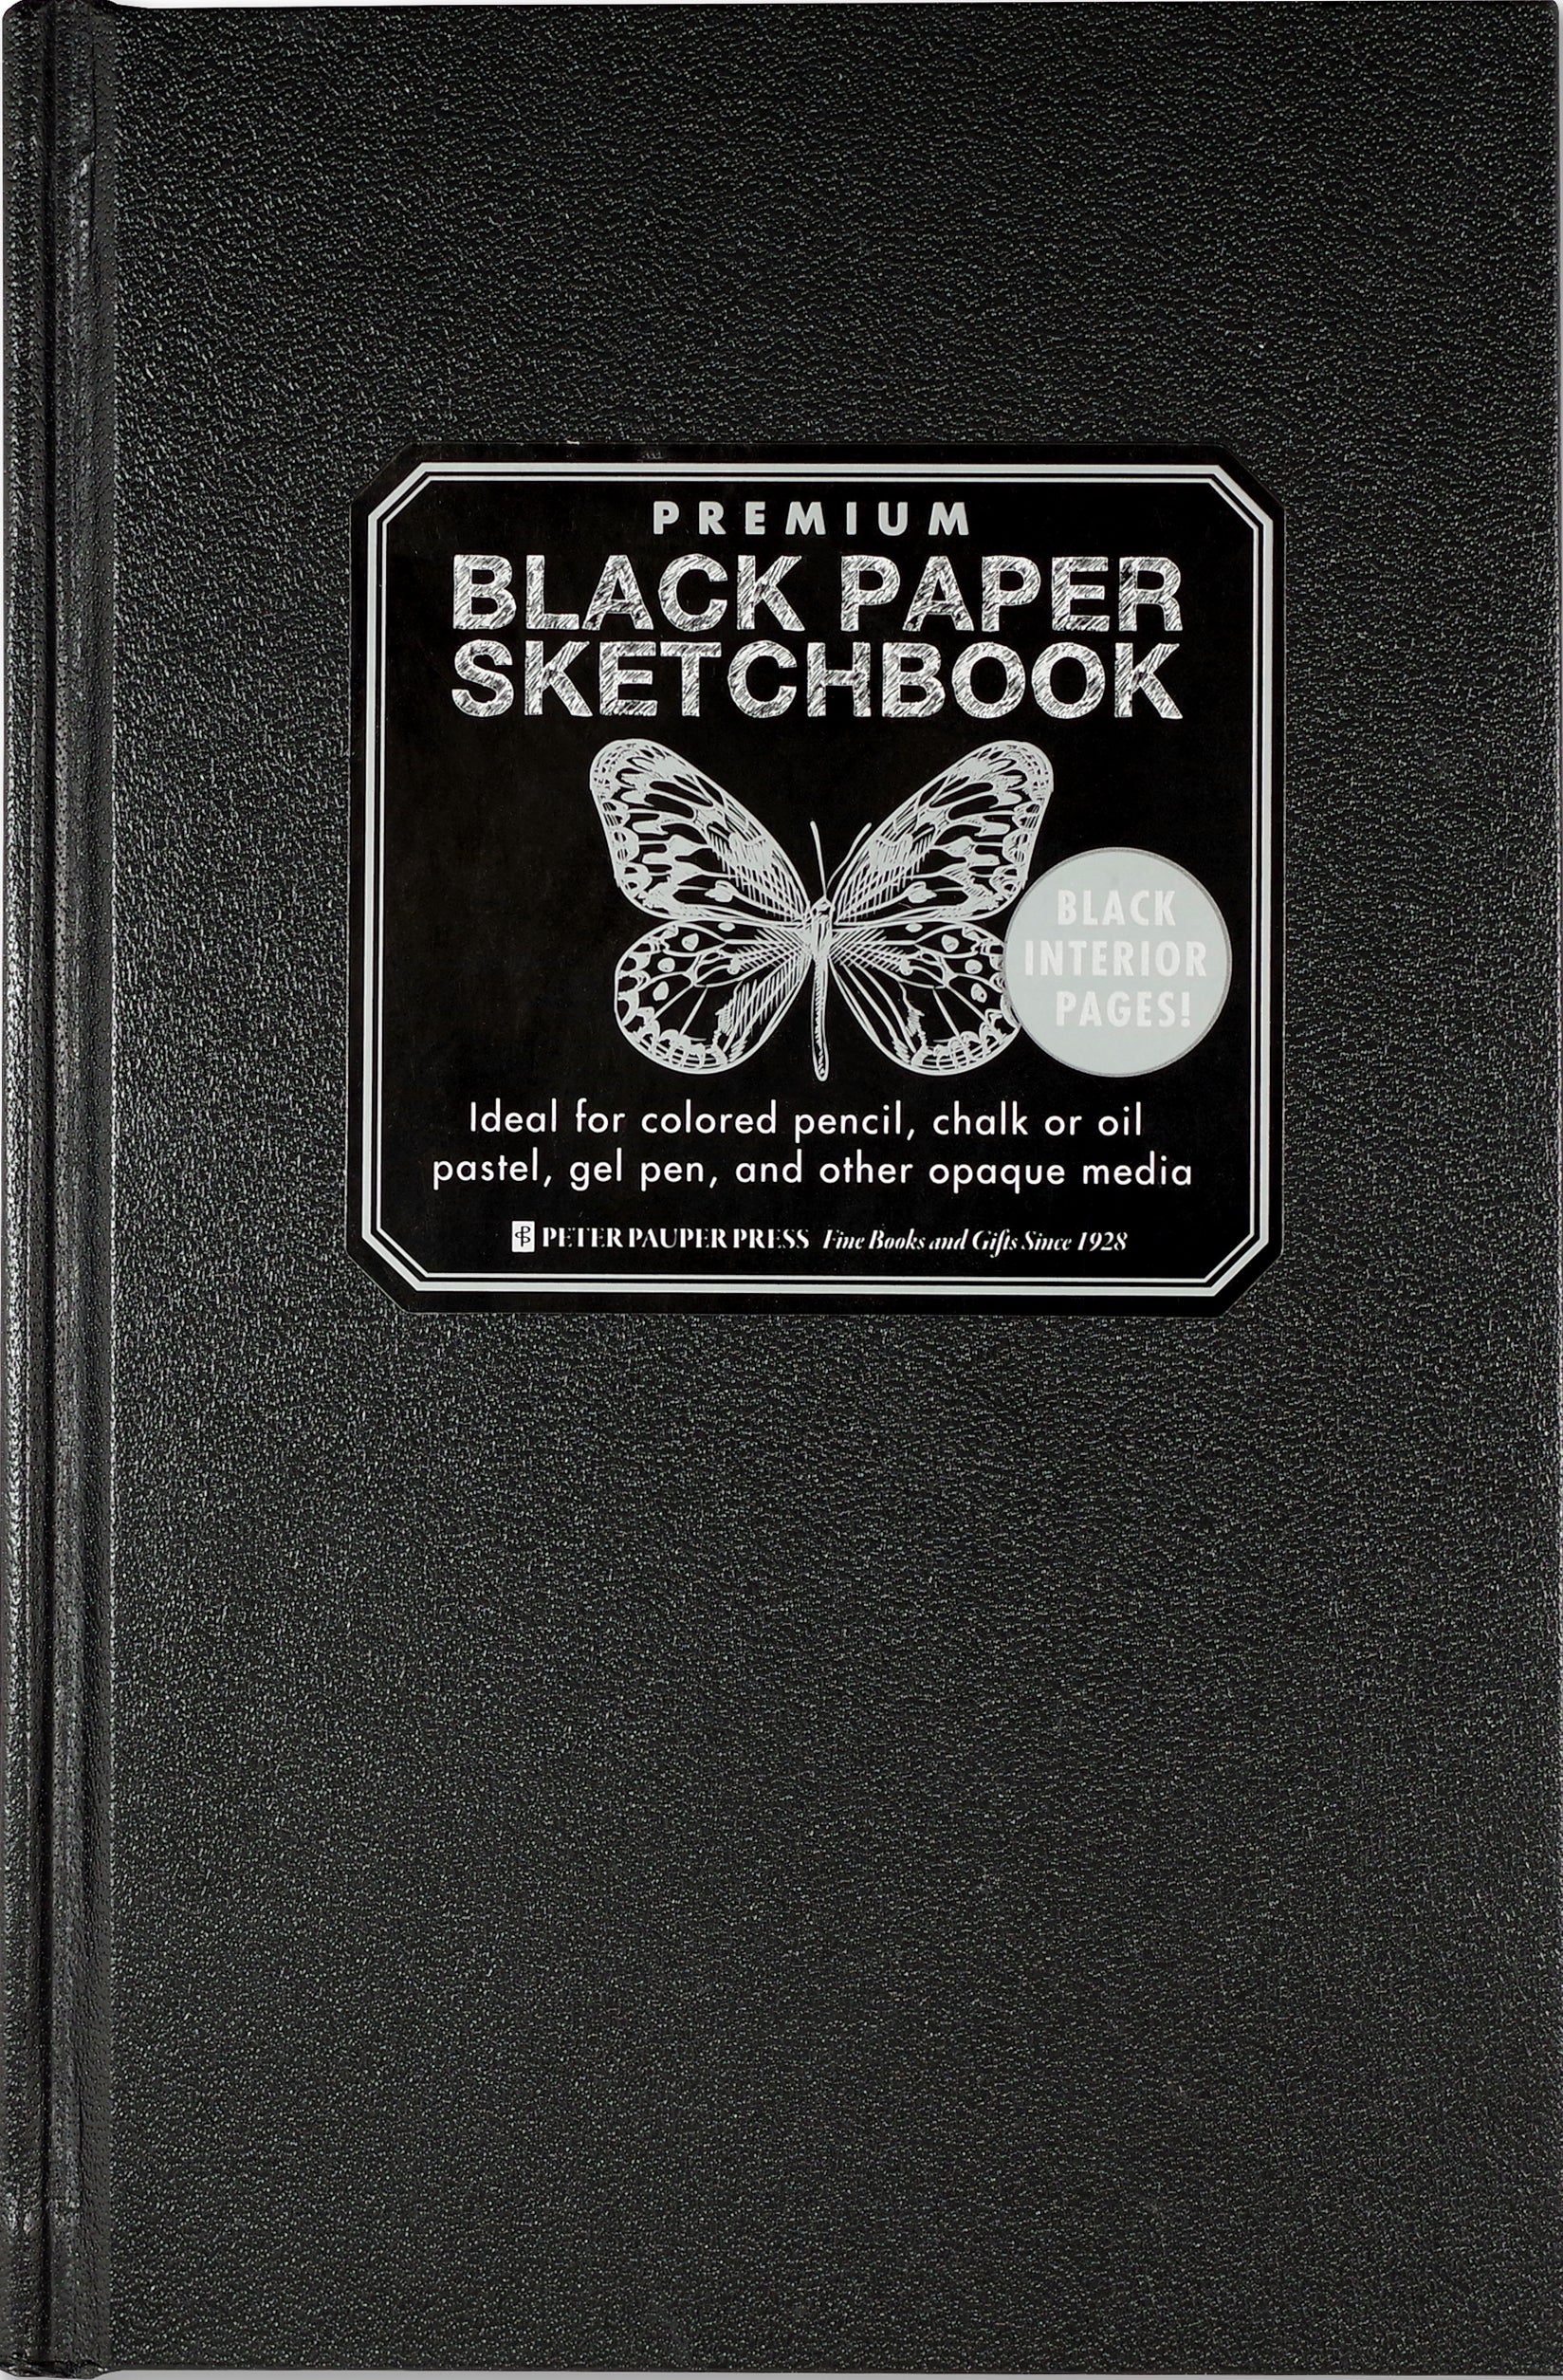 Sketchbook - Black Paper